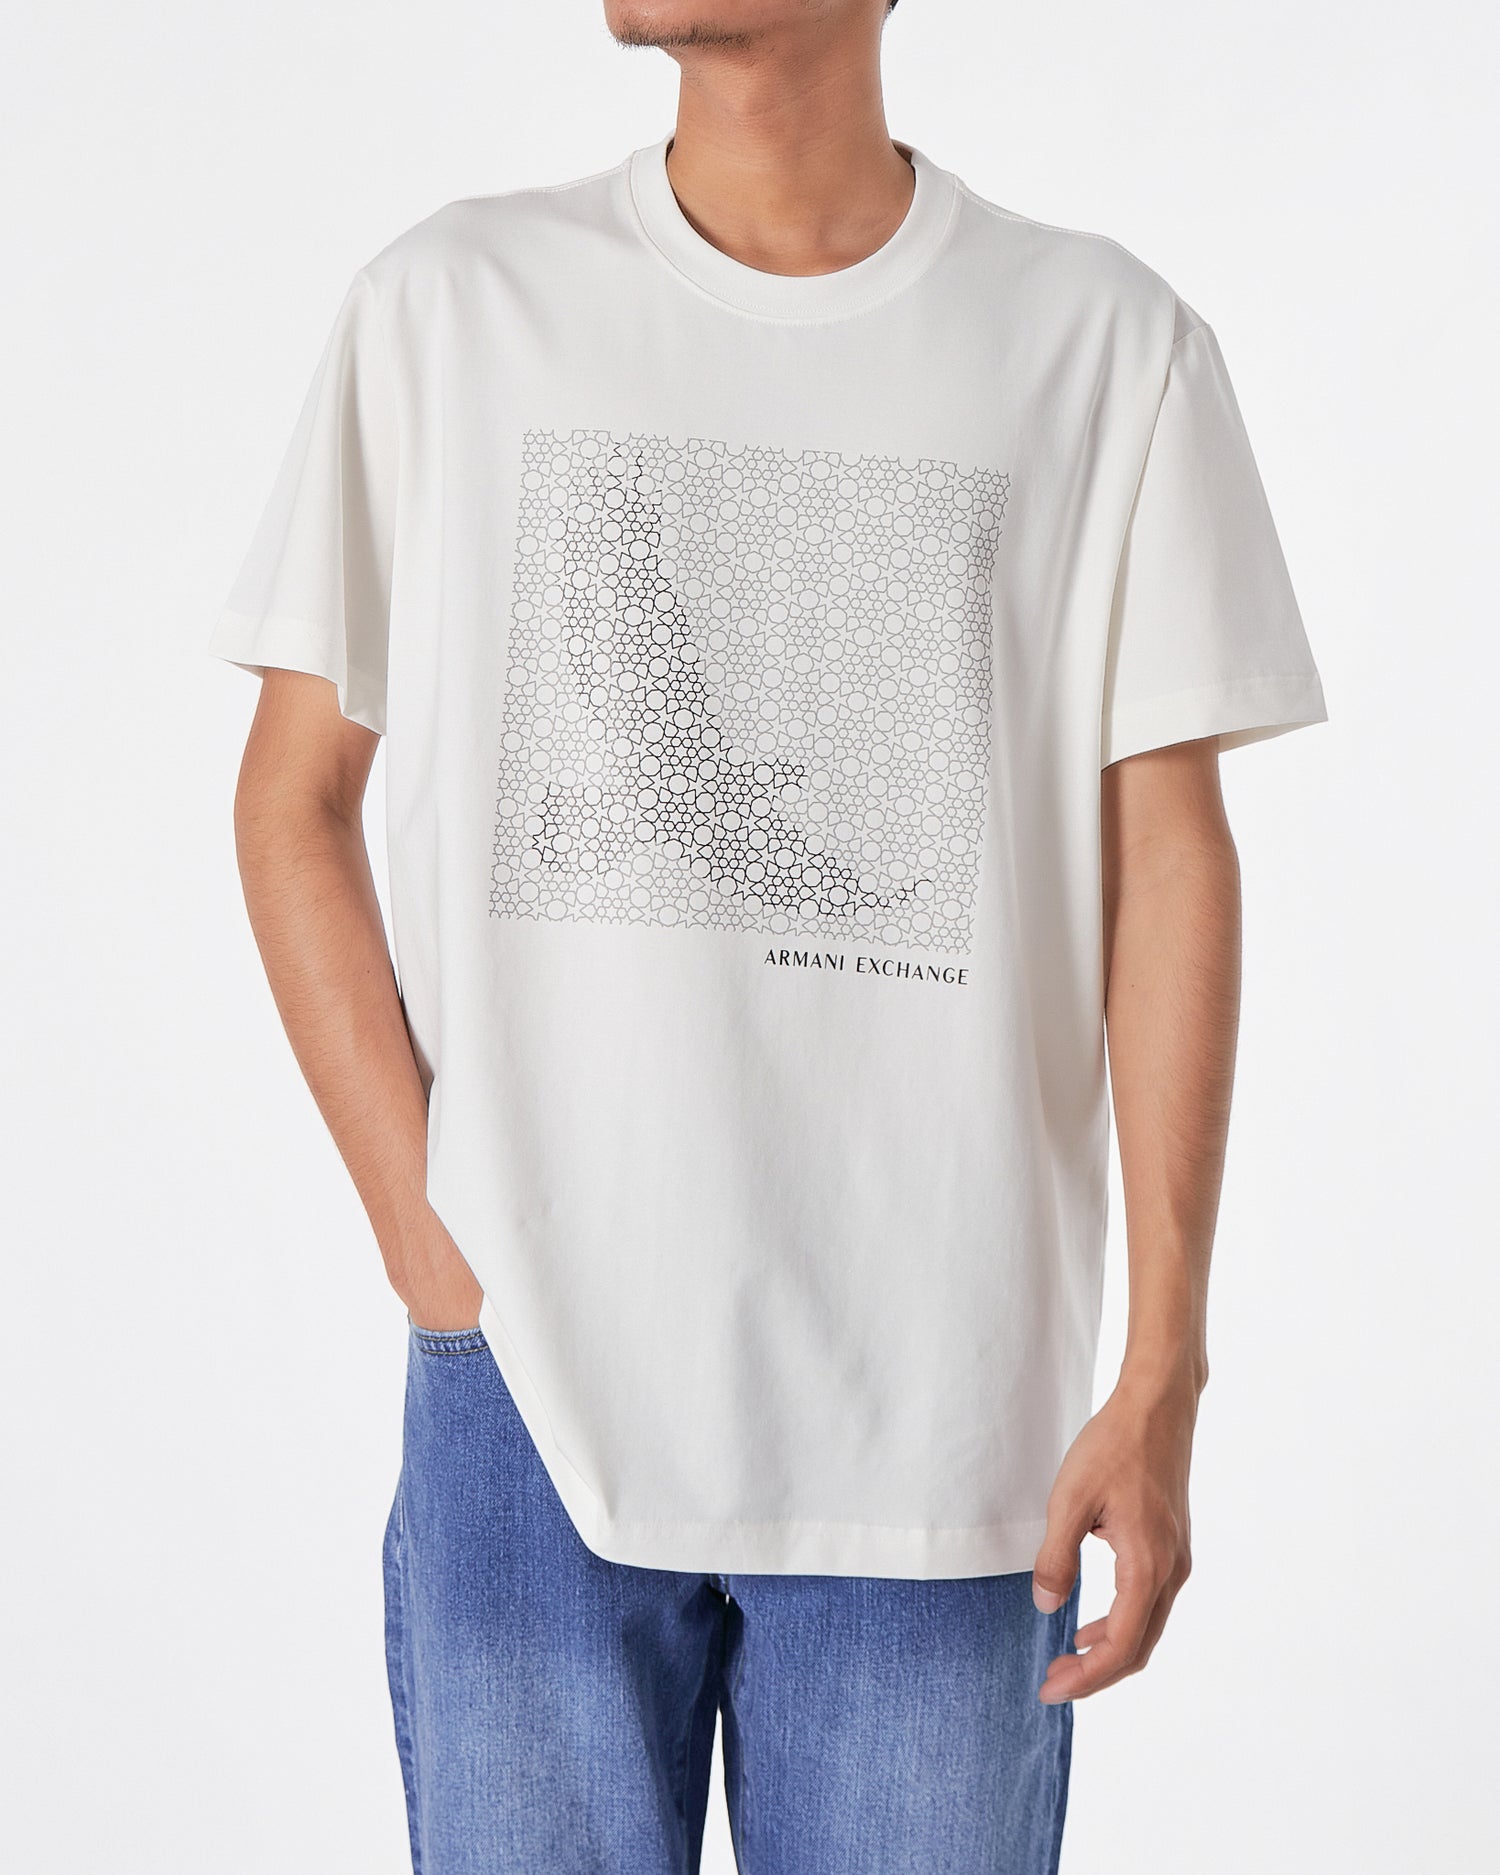 ARM Bird Printed Men White T-Shirt 17.90